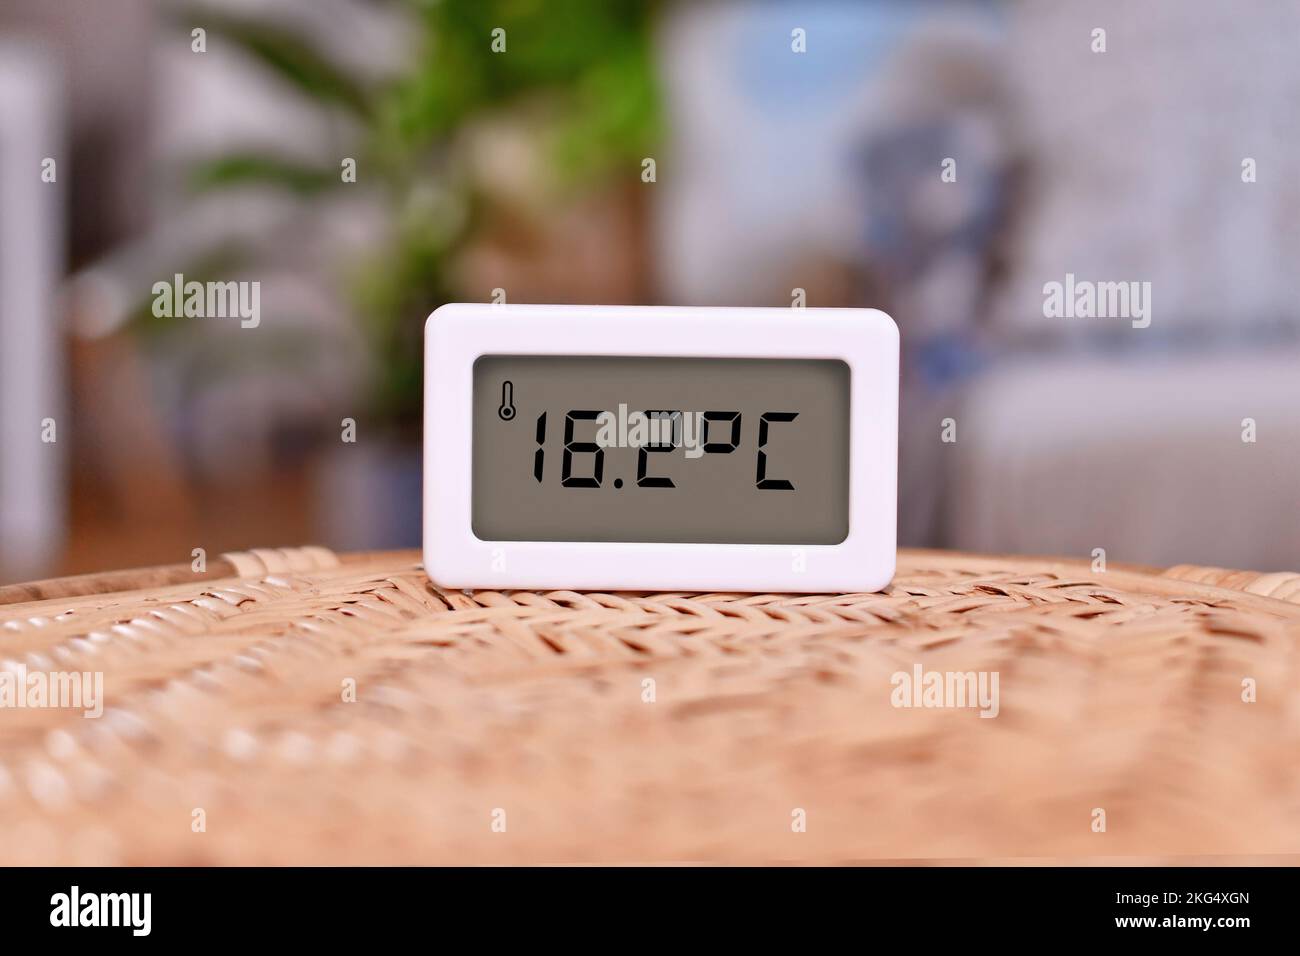 Termómetro digital que muestra una temperatura ambiente fría de 16,7 grados centígrados Foto de stock